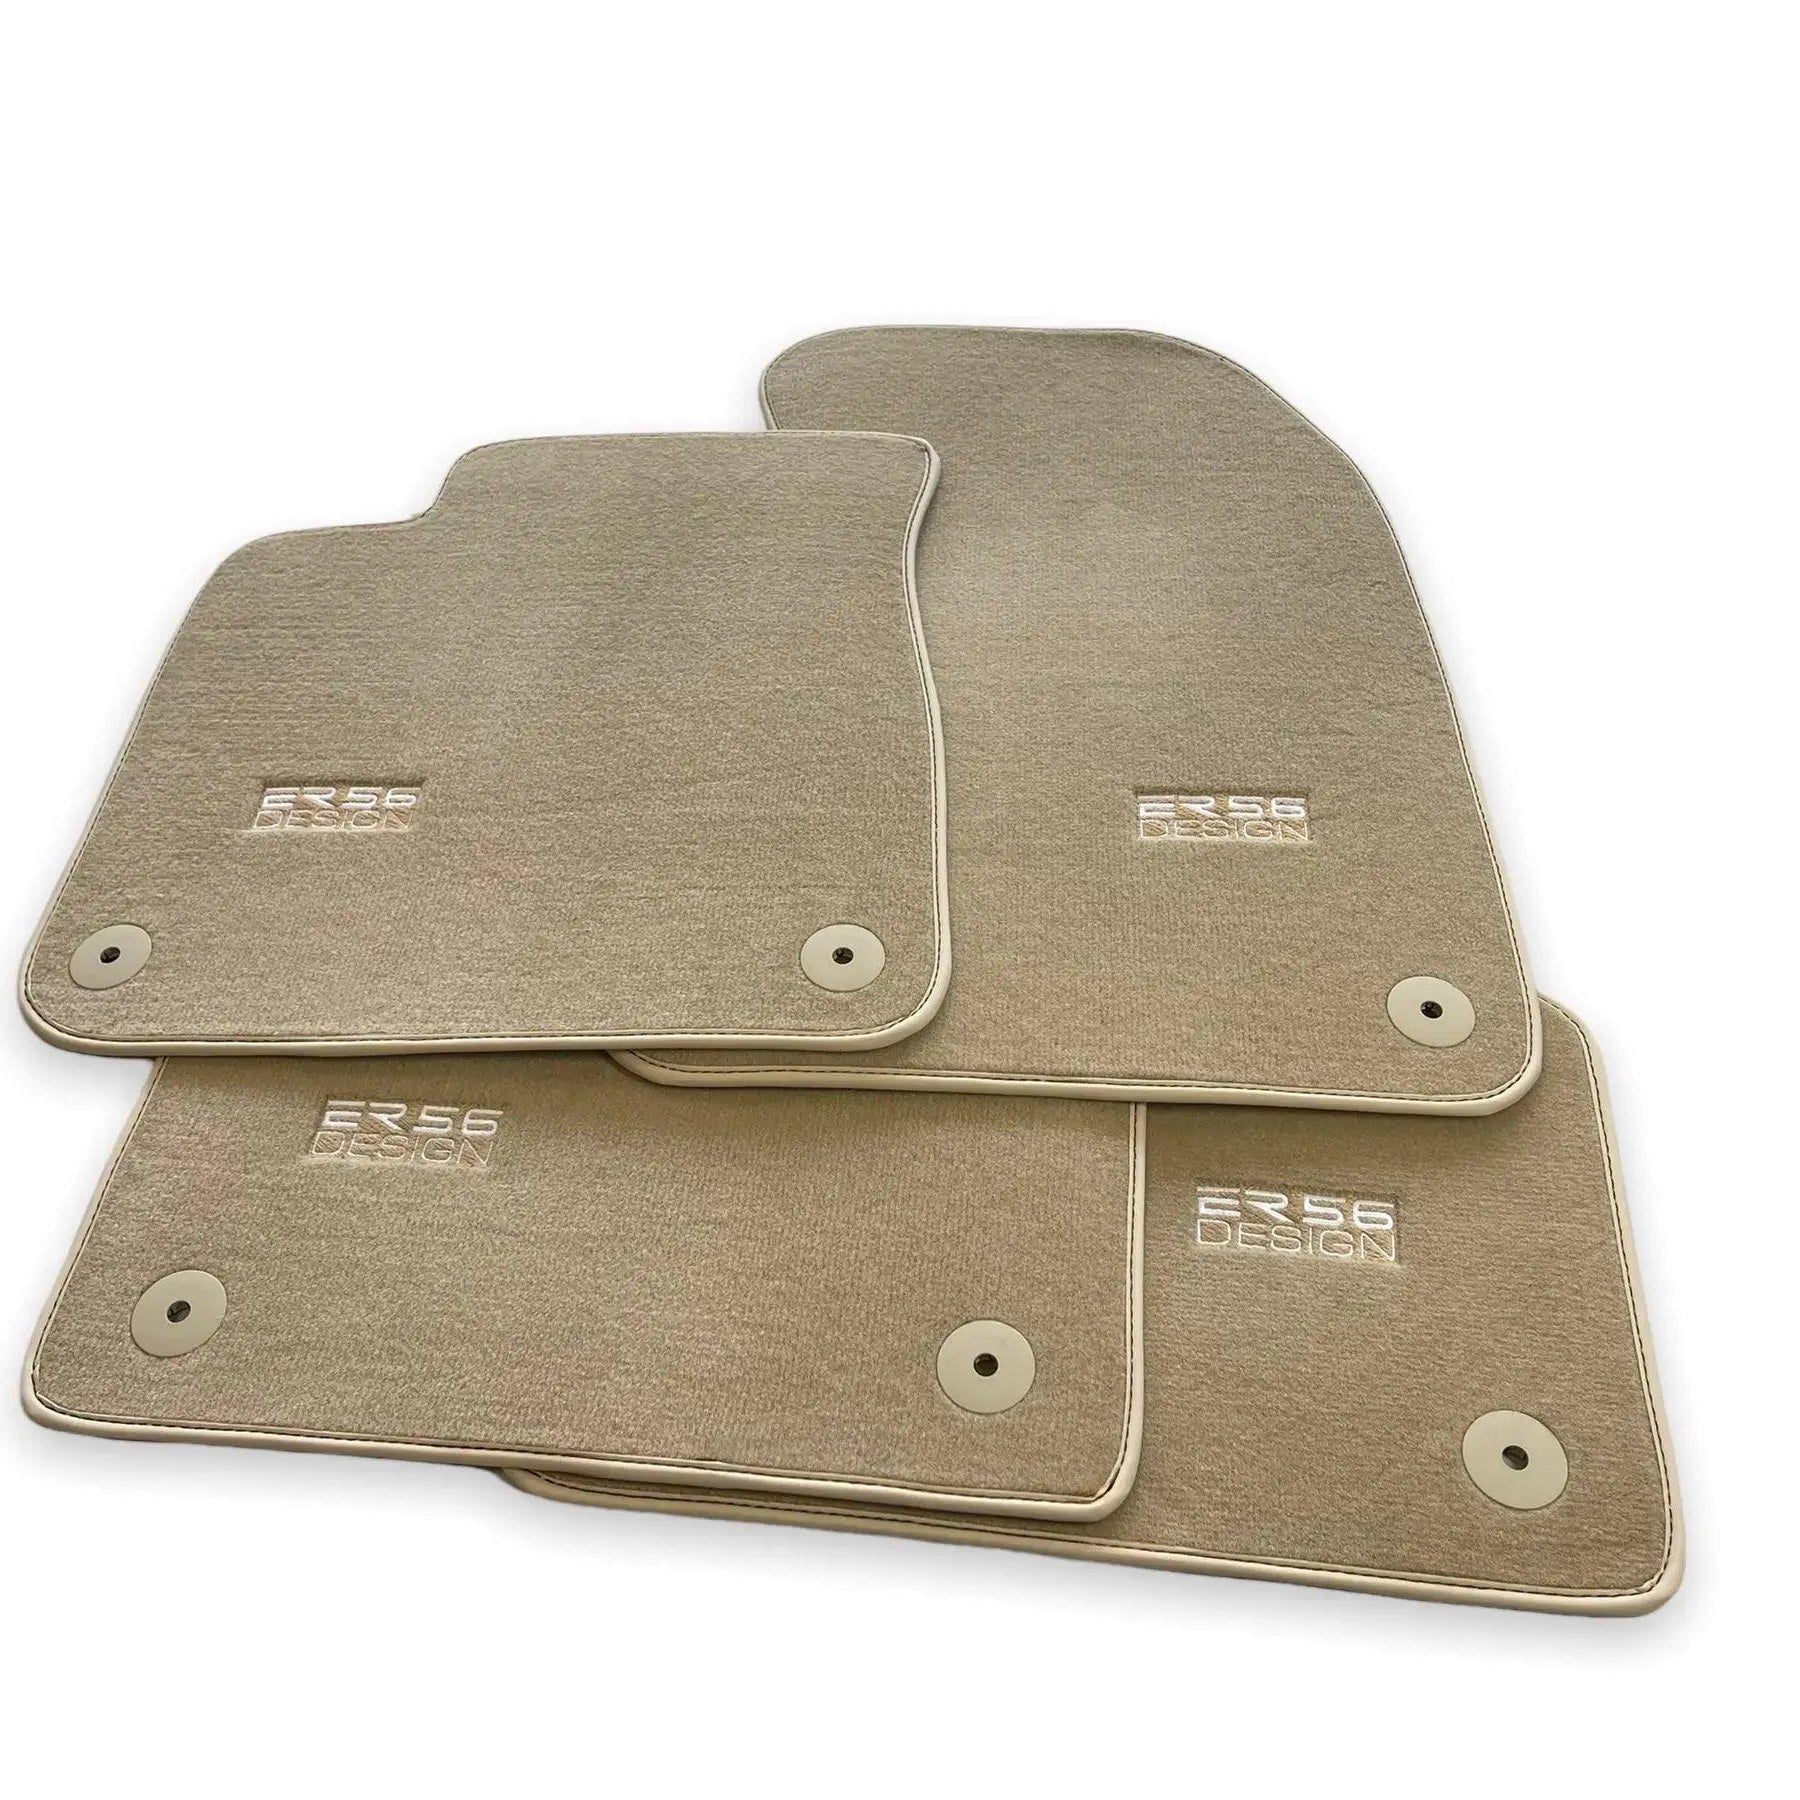 Beige Floor Mats for Audi A3 - Convertible (2014-2020) | ER56 Design - AutoWin